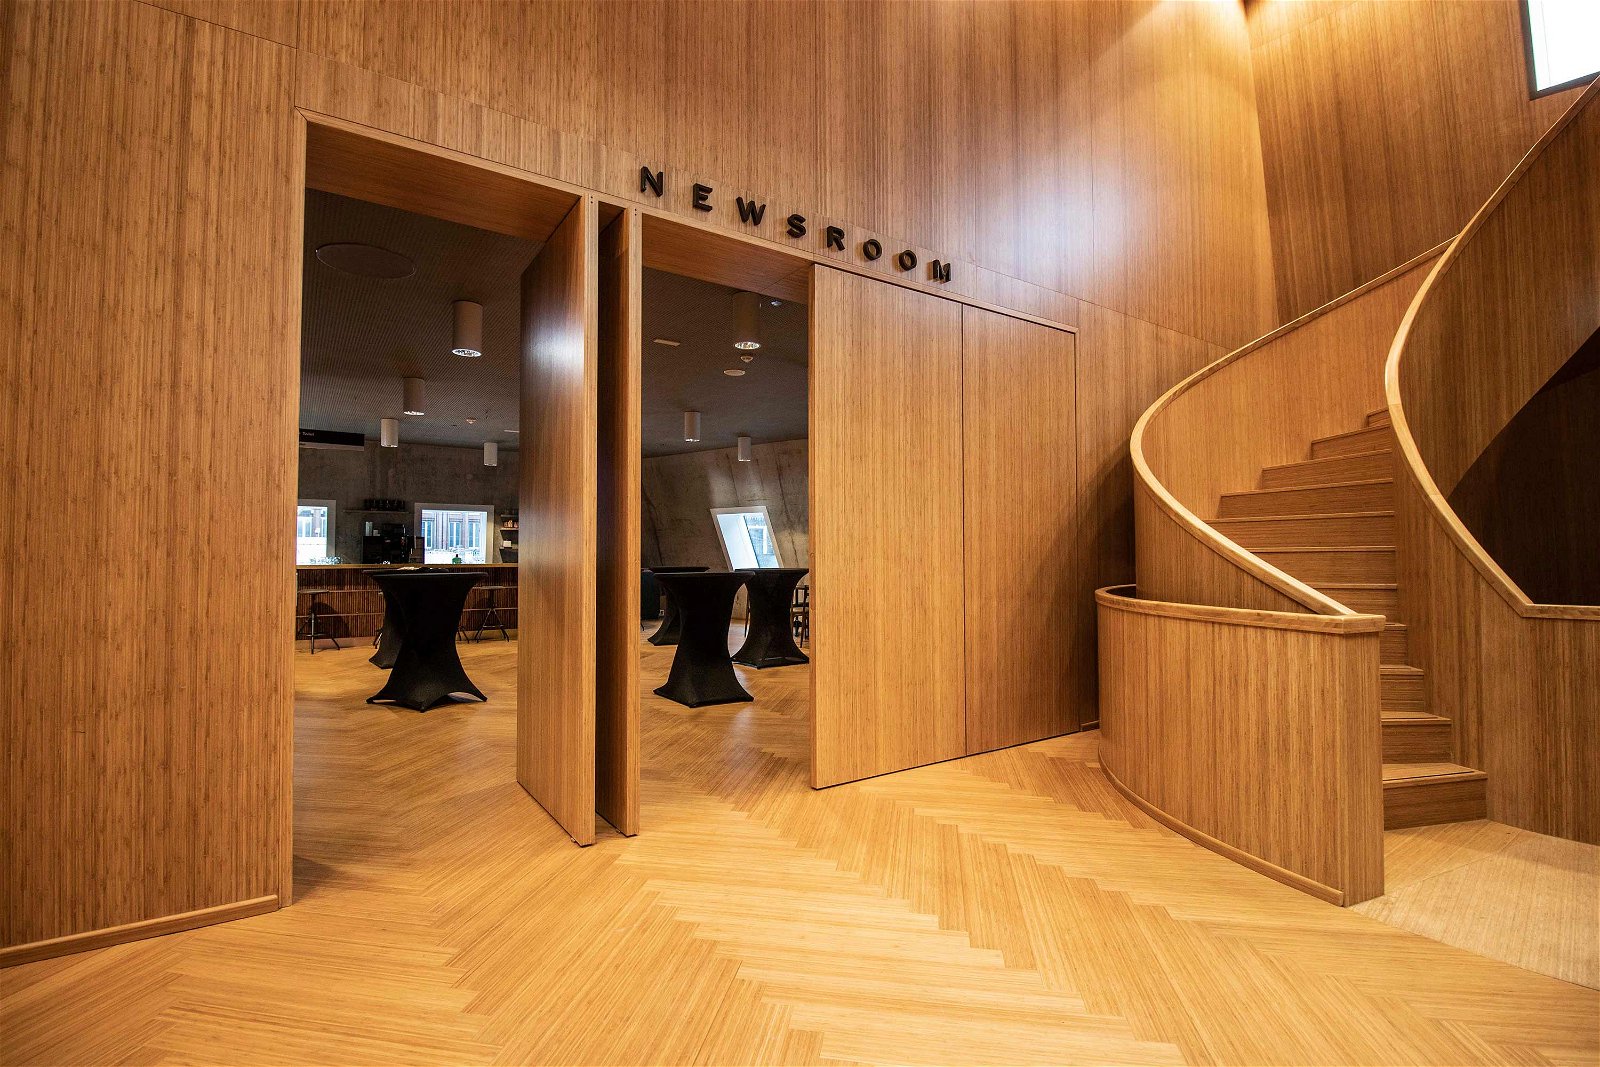 258.6-Groninger-Forum-bamboo-pivot-doors-designed-by-NL-Architects---FritsJurgens-pivot-hinges-Inside.jpg